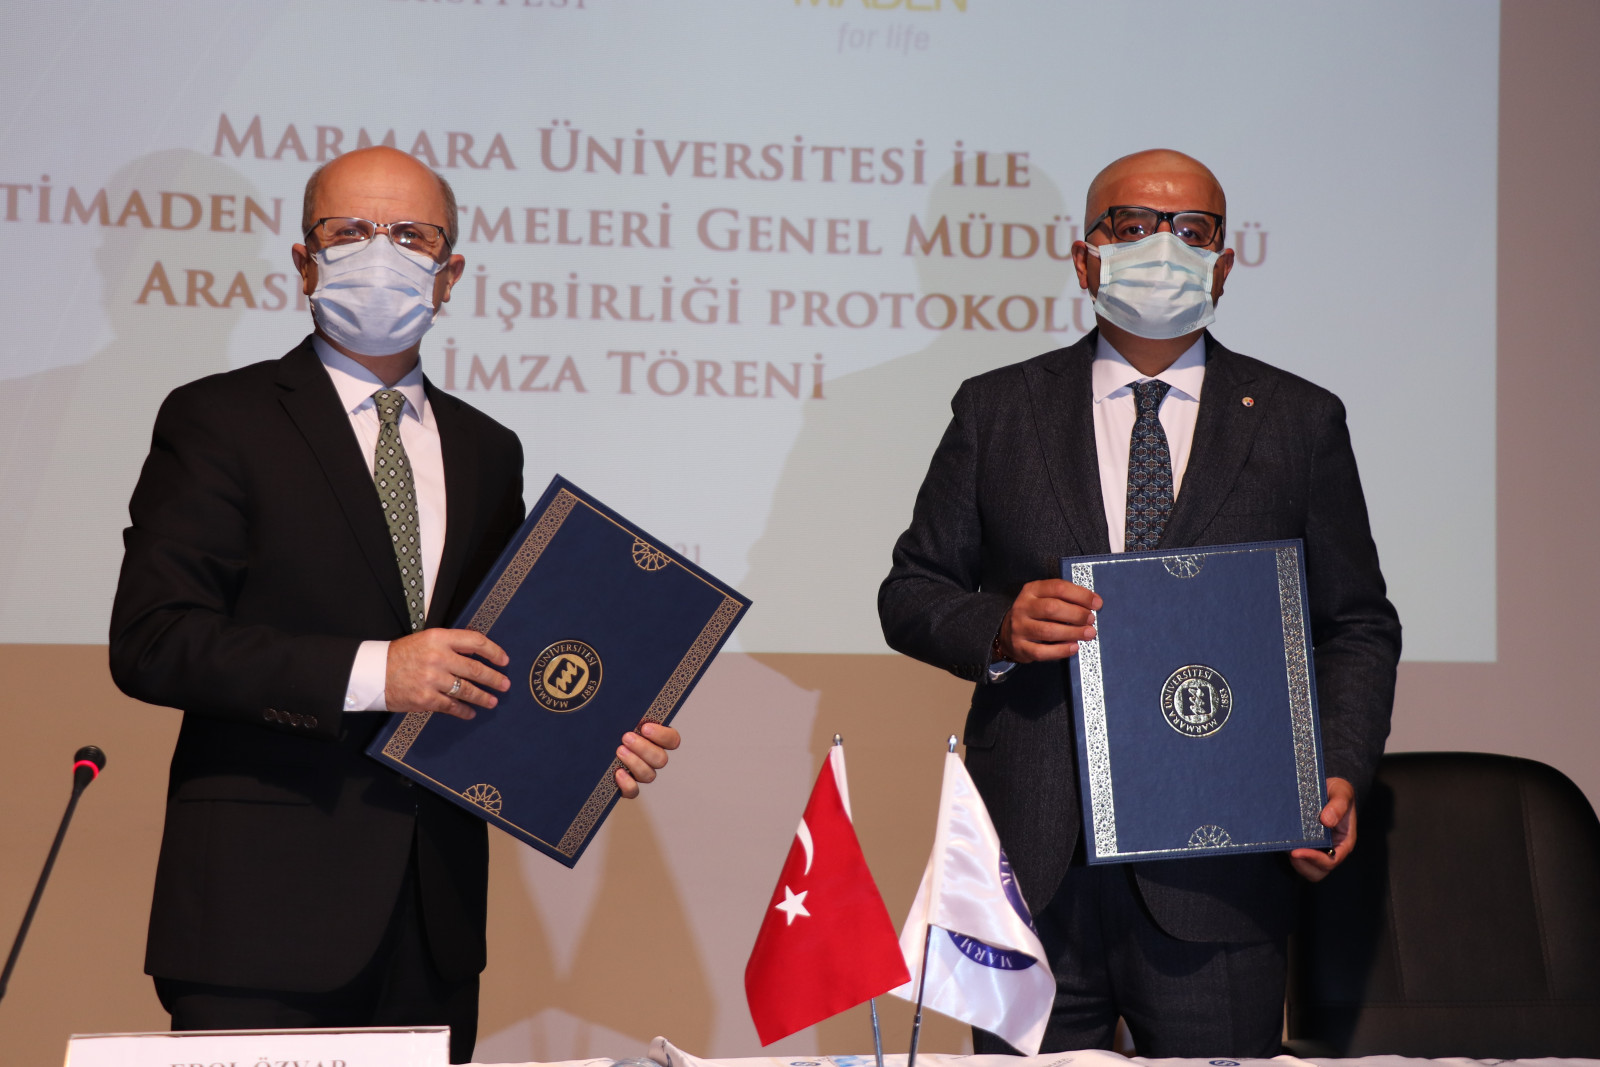 Marmara Üniversitesi ve Etimaden İşletmeleri Genel Müdürlüğü Arasında AR-GE İş Birliği Protokolü İmzalandı